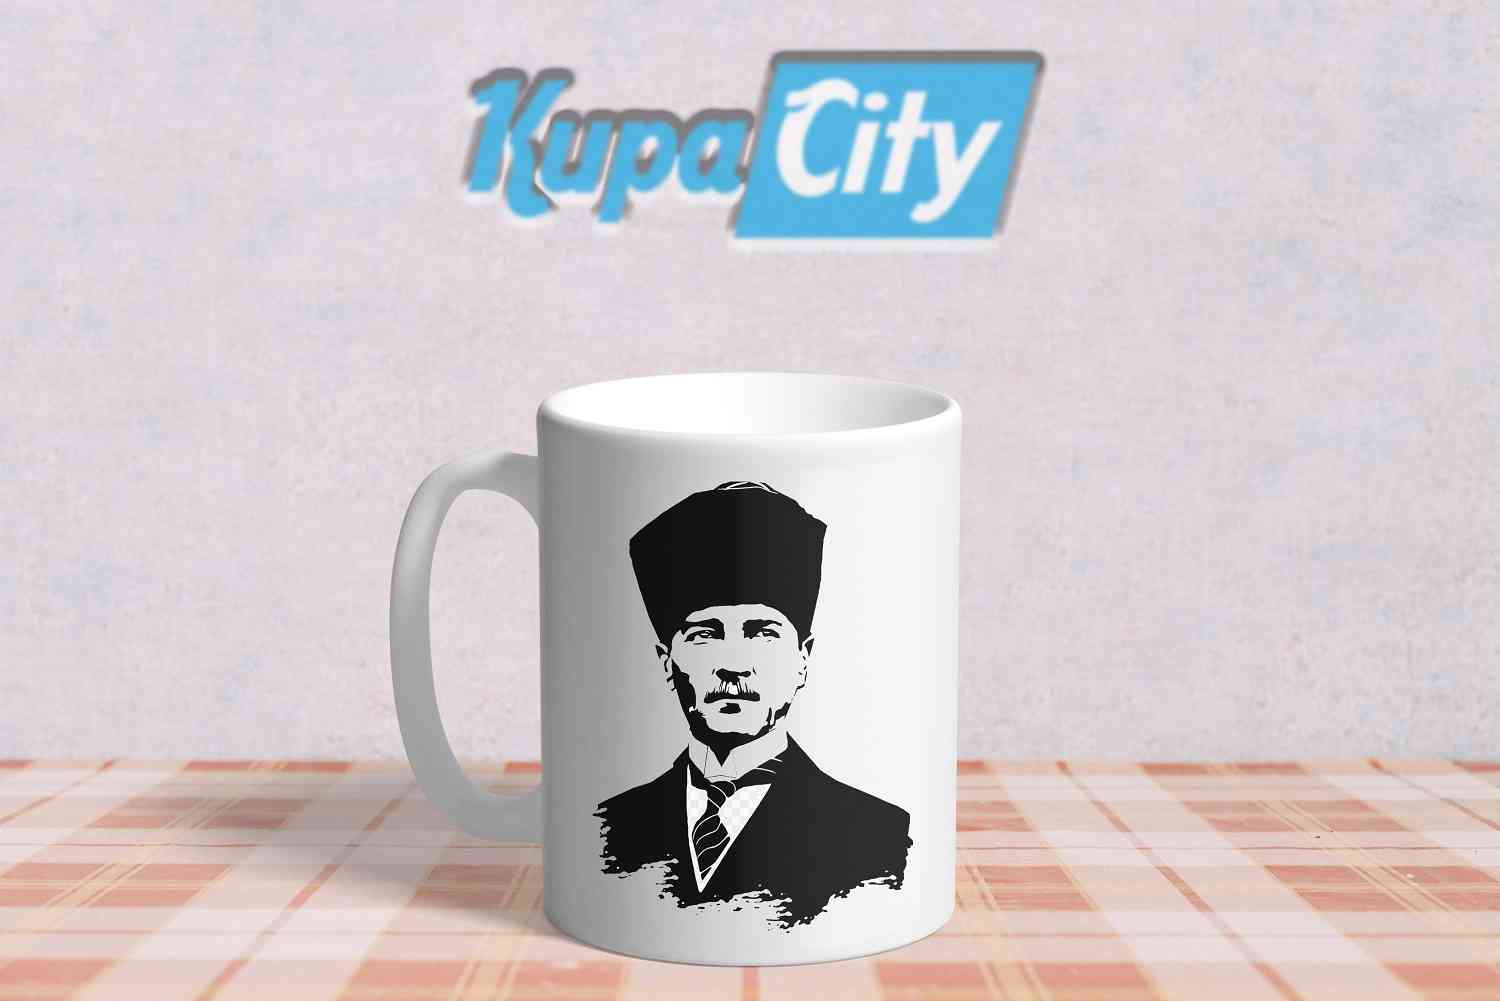 Ataturk Imzali Kahve Fincani Fiyat Ve Modelleri